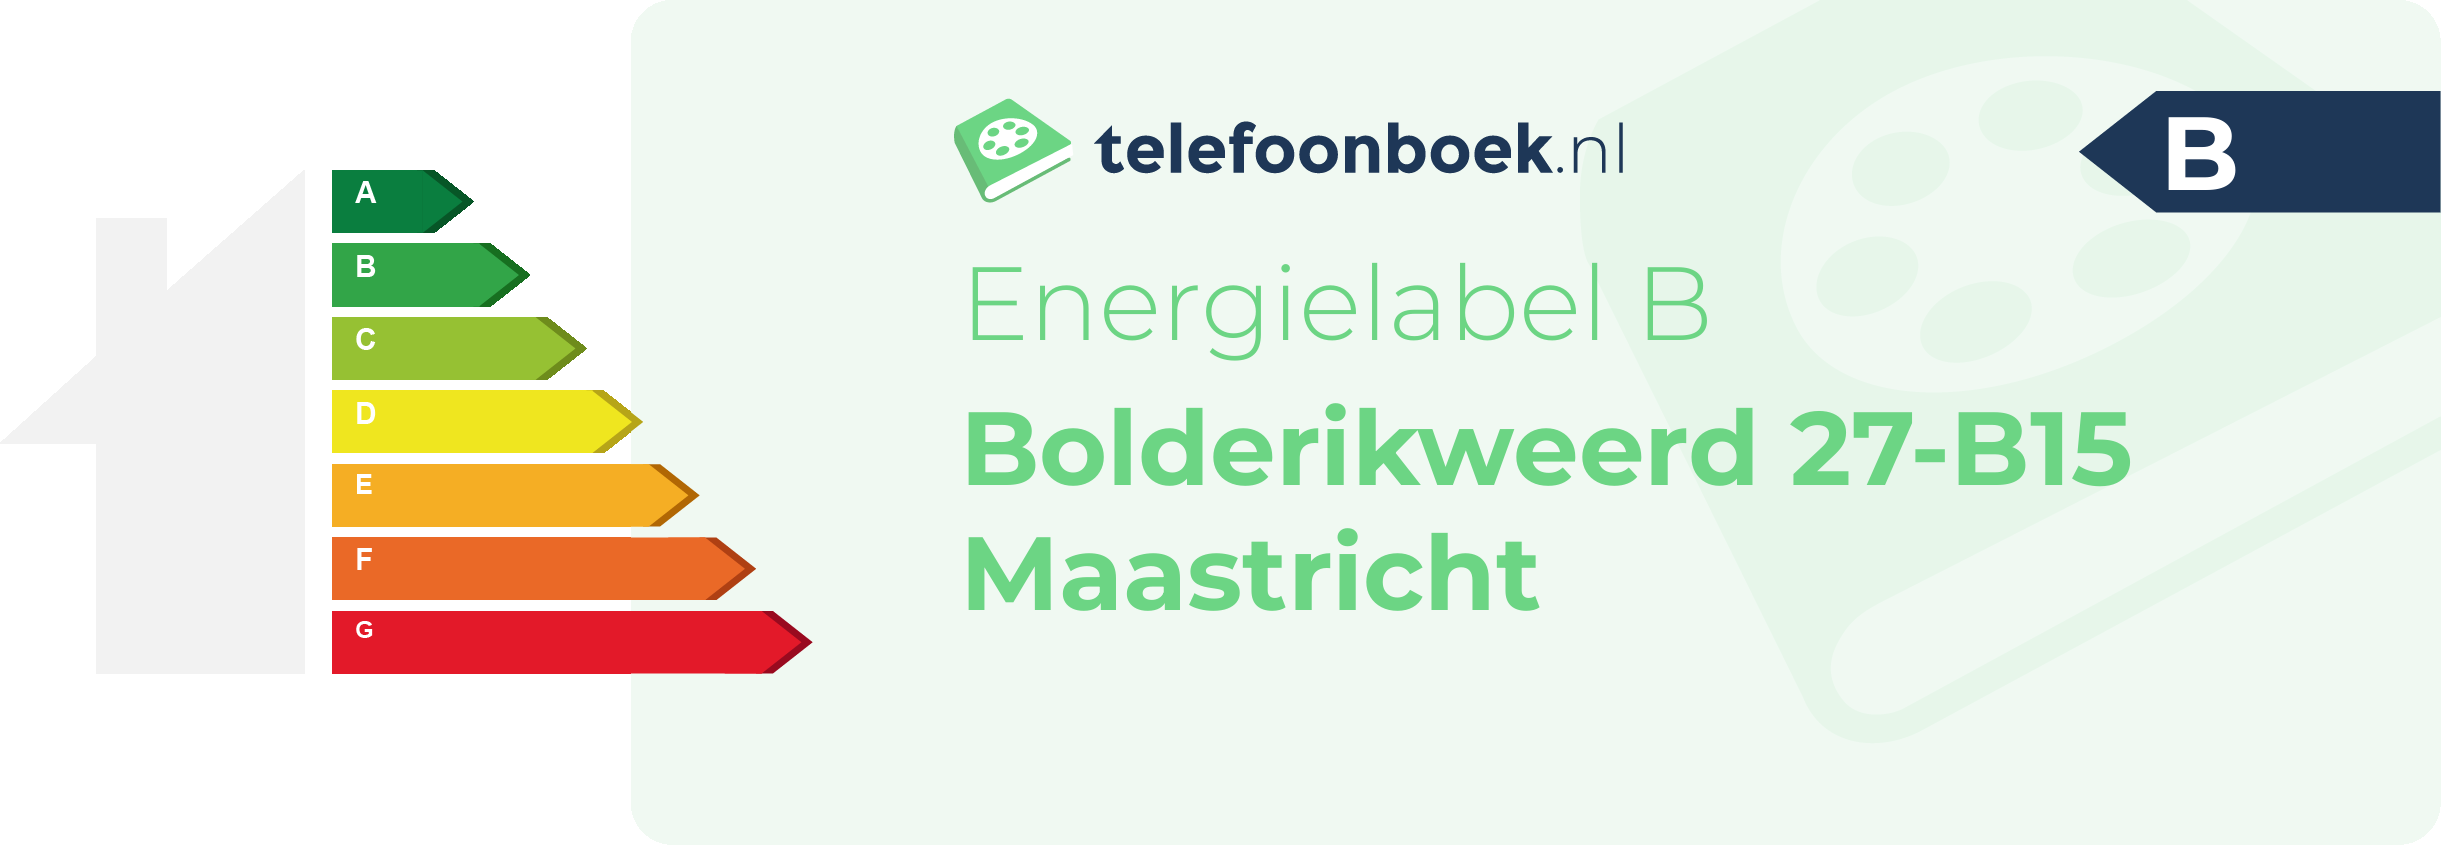 Energielabel Bolderikweerd 27-B15 Maastricht